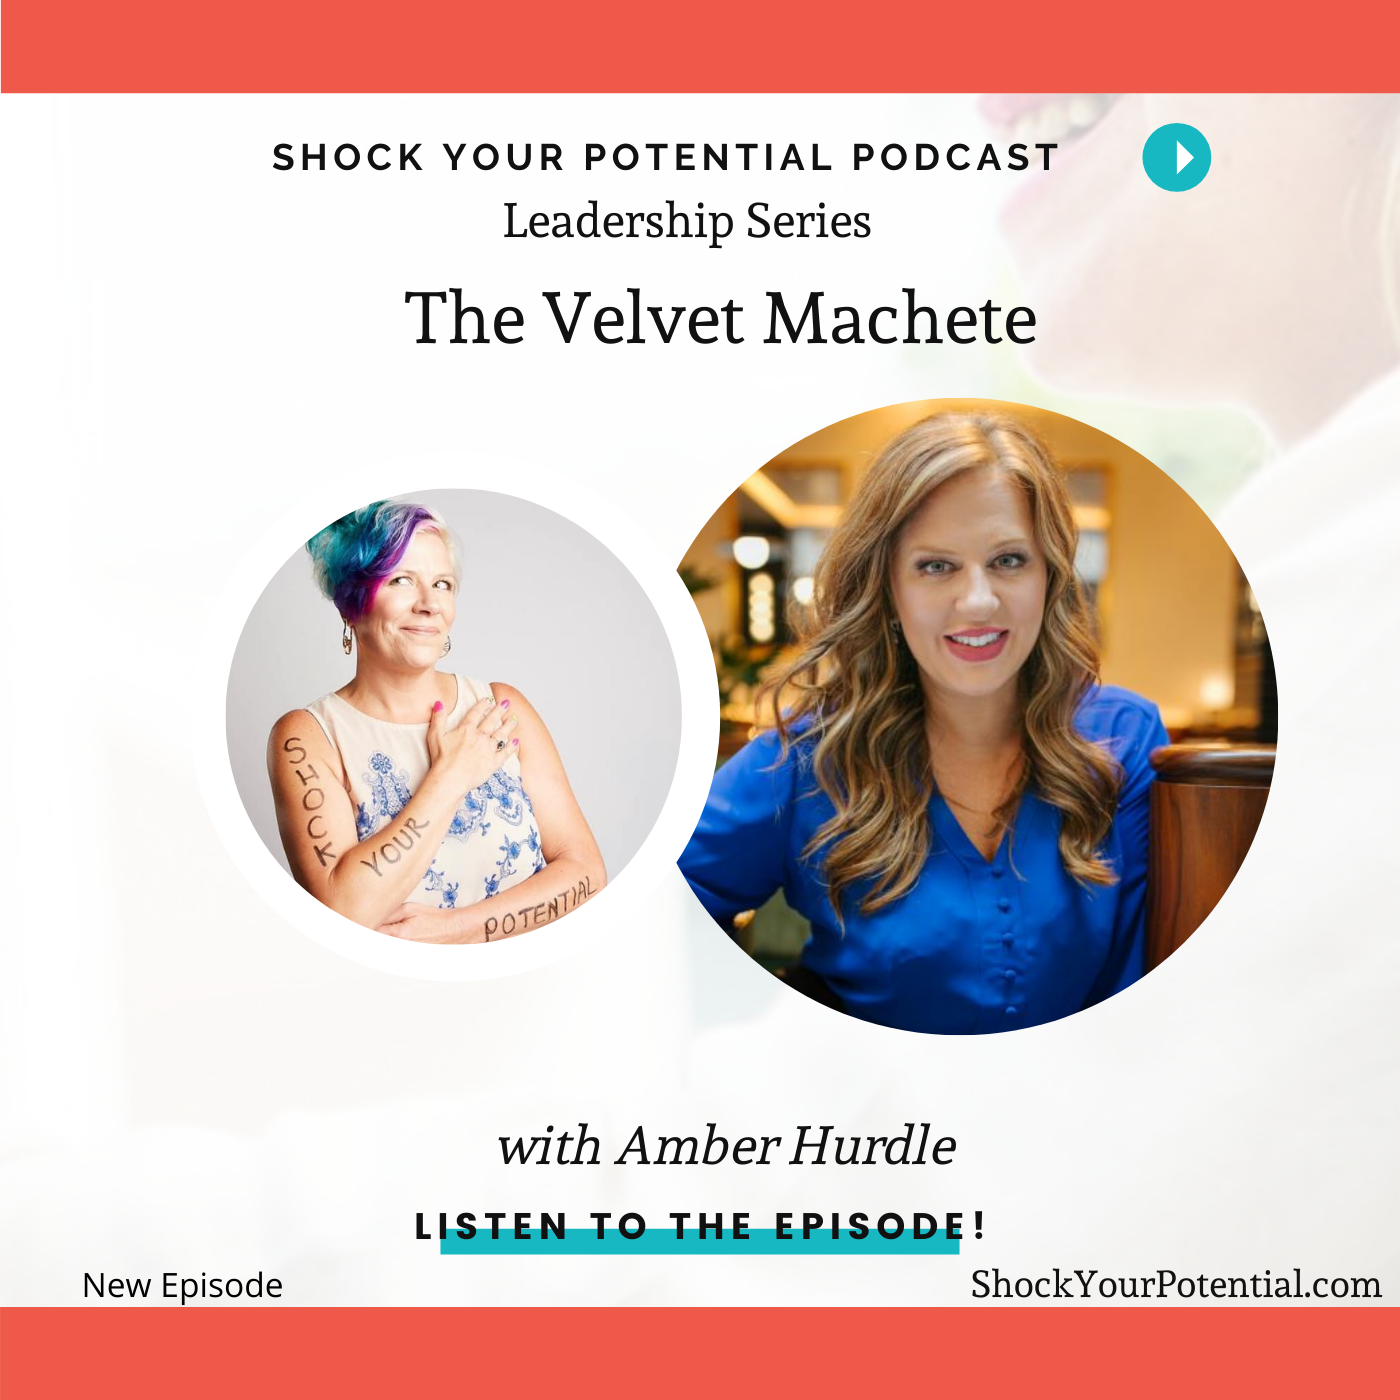 The Velvet Machete – Amber Hurdle